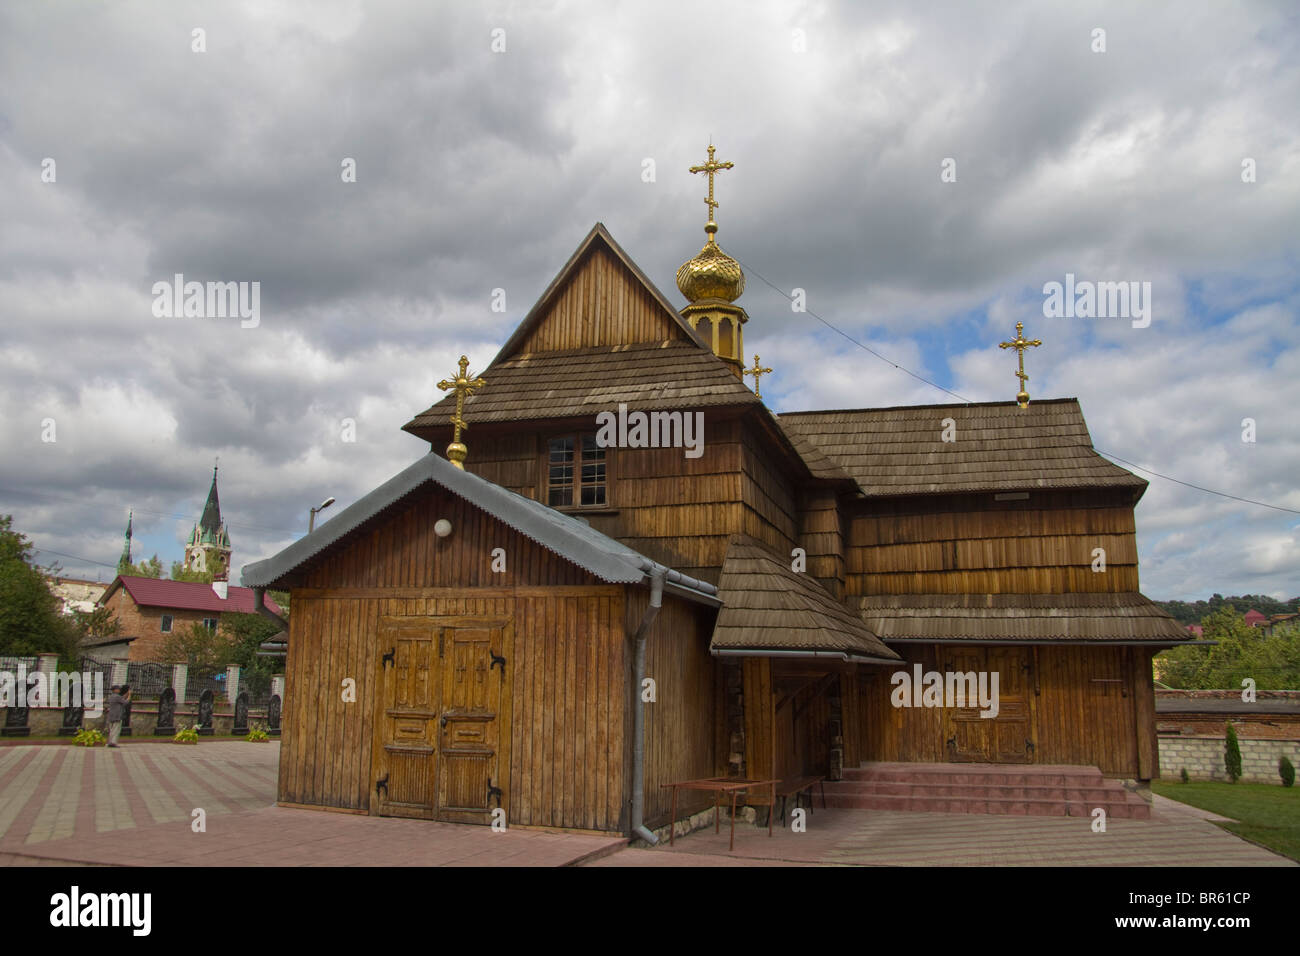 Wooden church of Dormition, Chortkiv, Ternopil oblast (province), Podillya, Western Ukraine Stock Photo